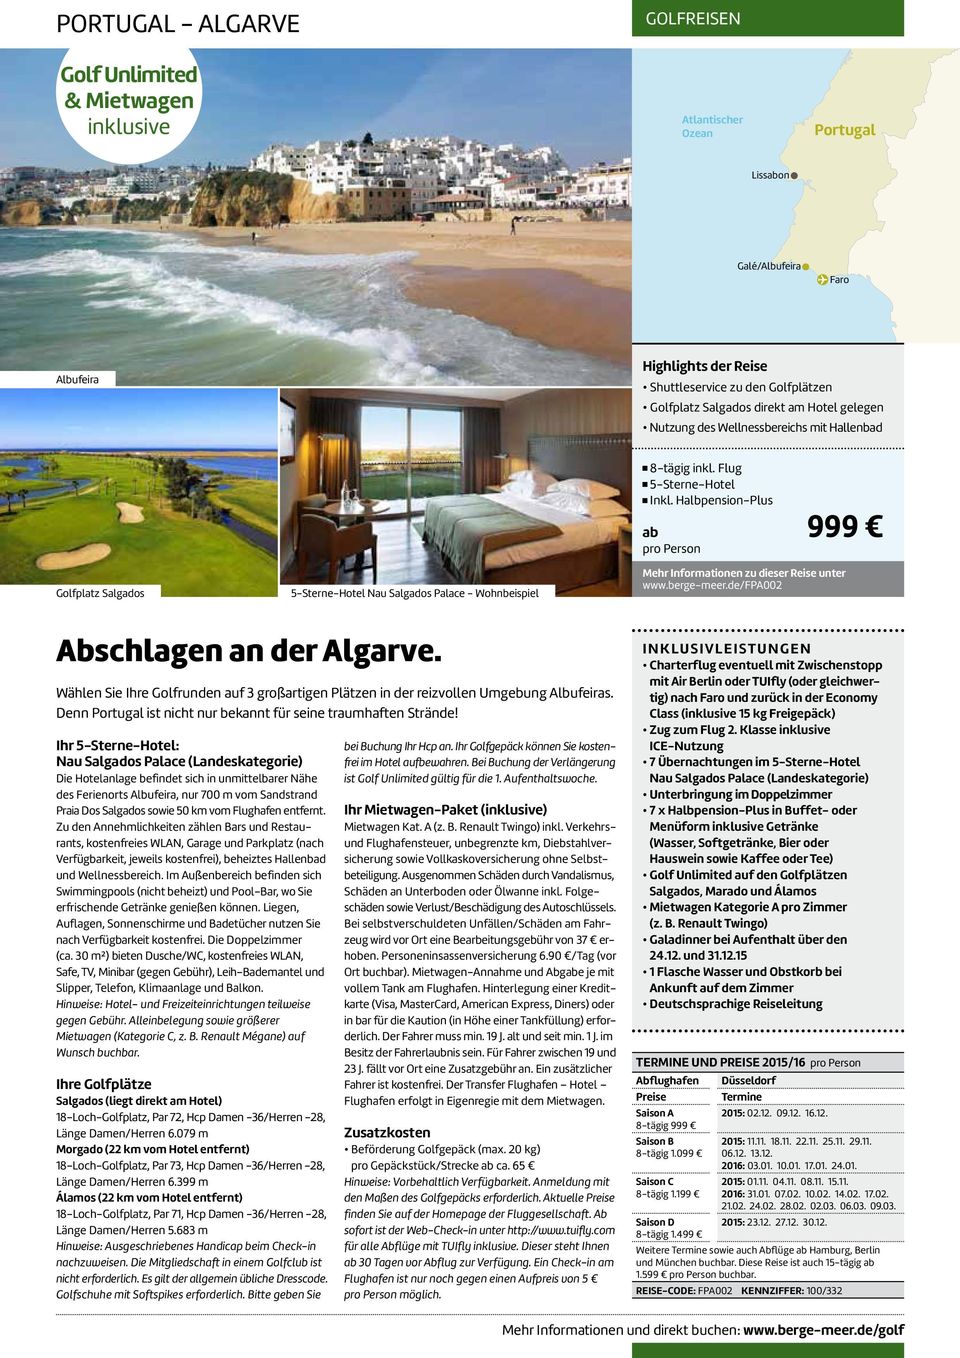 berge-meer.de/fpa002 Abschlagen an der Algarve. Wählen Sie Ihre Golfrunden auf 3 großartigen Plätzen in der reizvollen Umgebung Albufeiras.